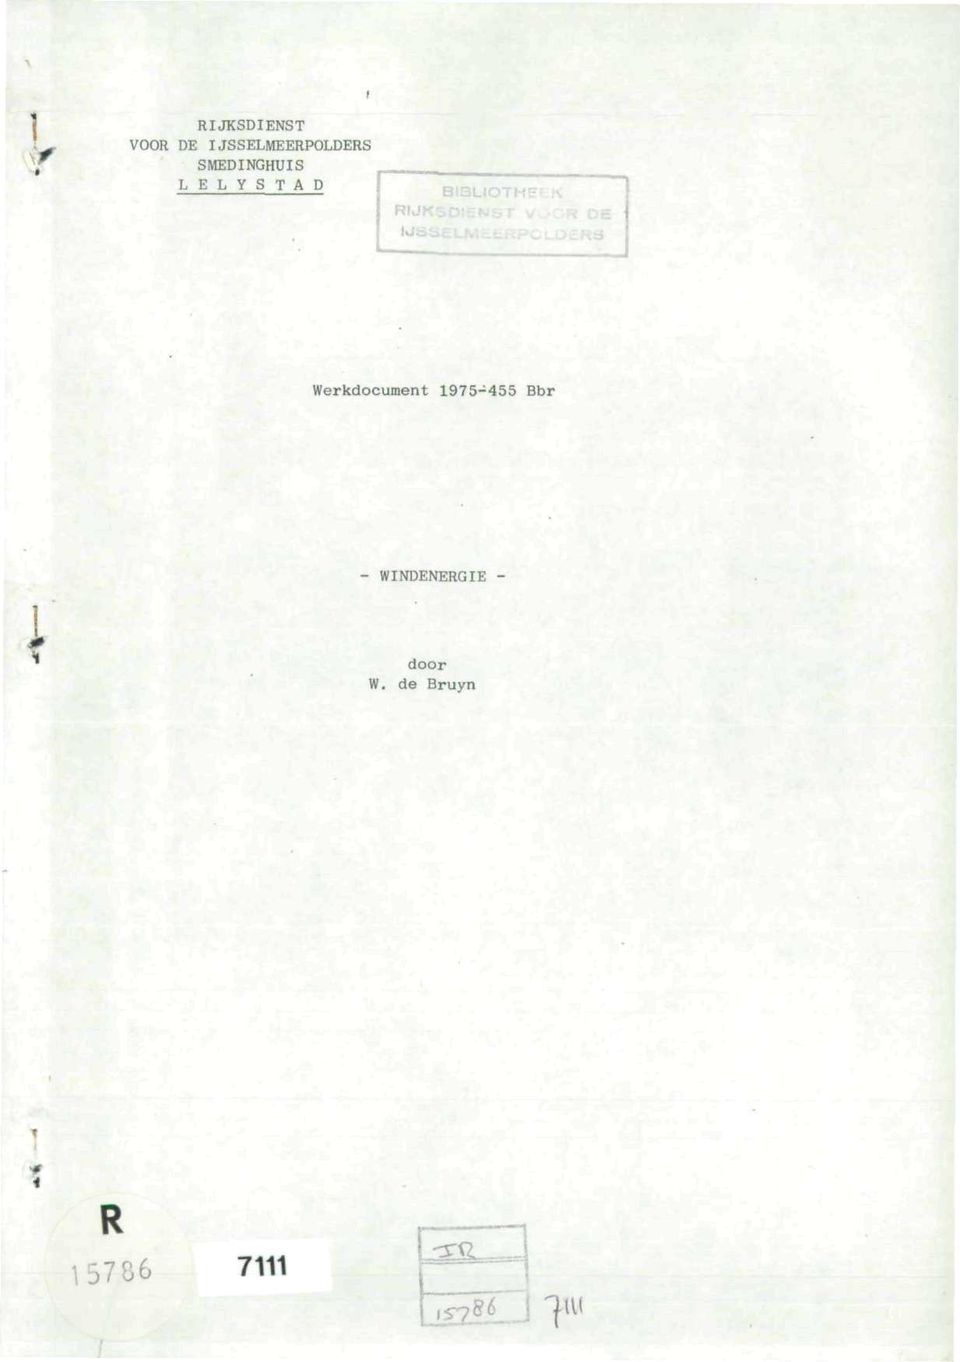 LELYSTAD RIJ Werkdocument 1975-455